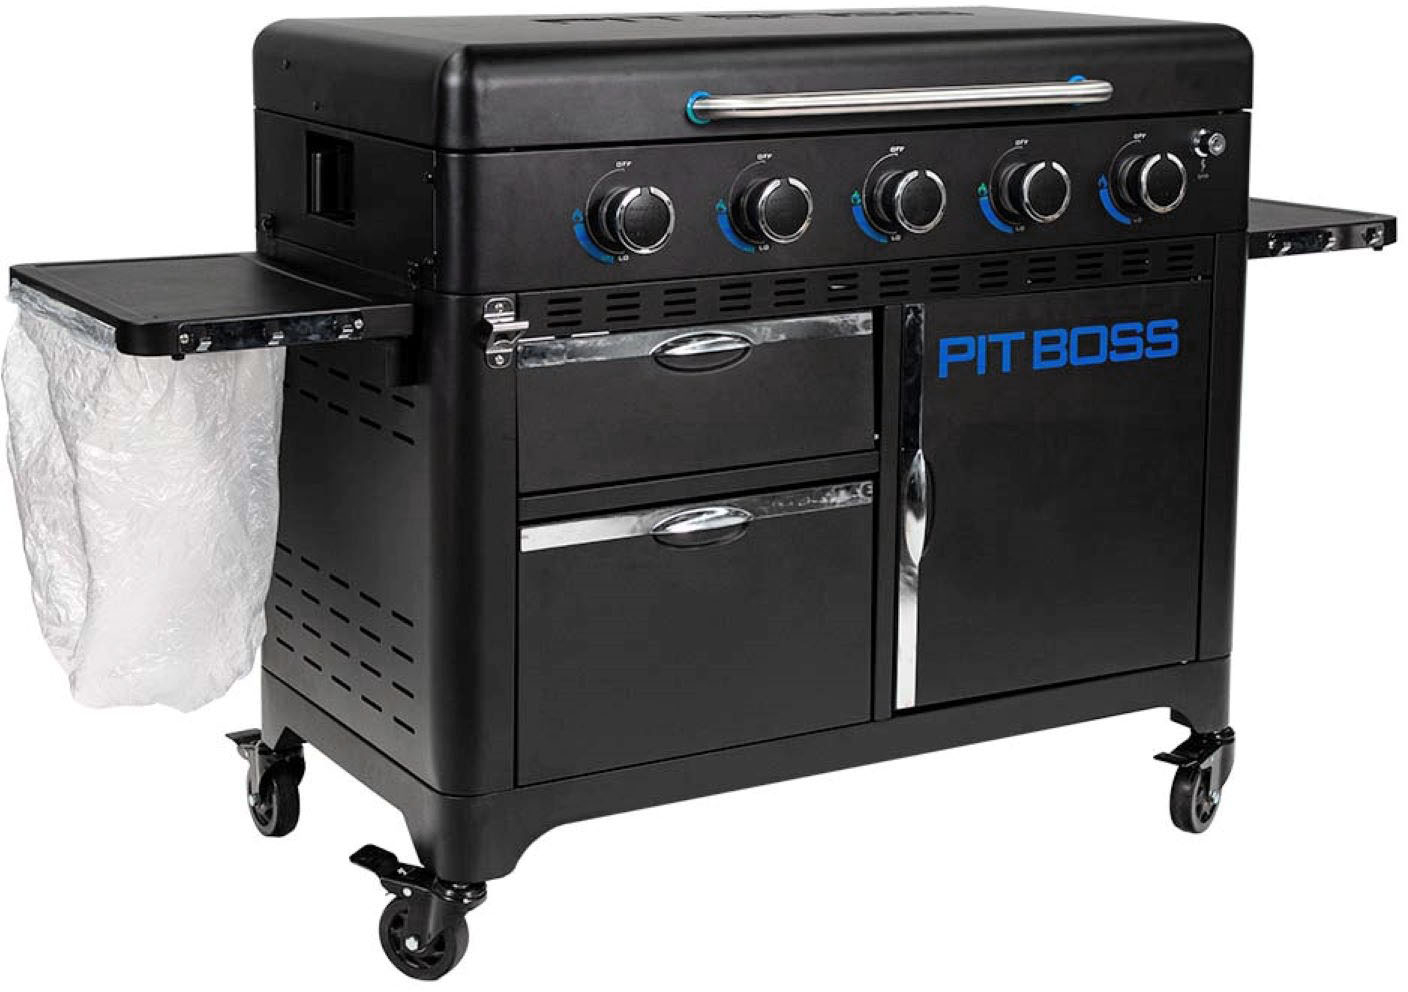 Pit Boss Ultimate Outdoor Gas 2-Burner Griddle Black 10780 - Best Buy